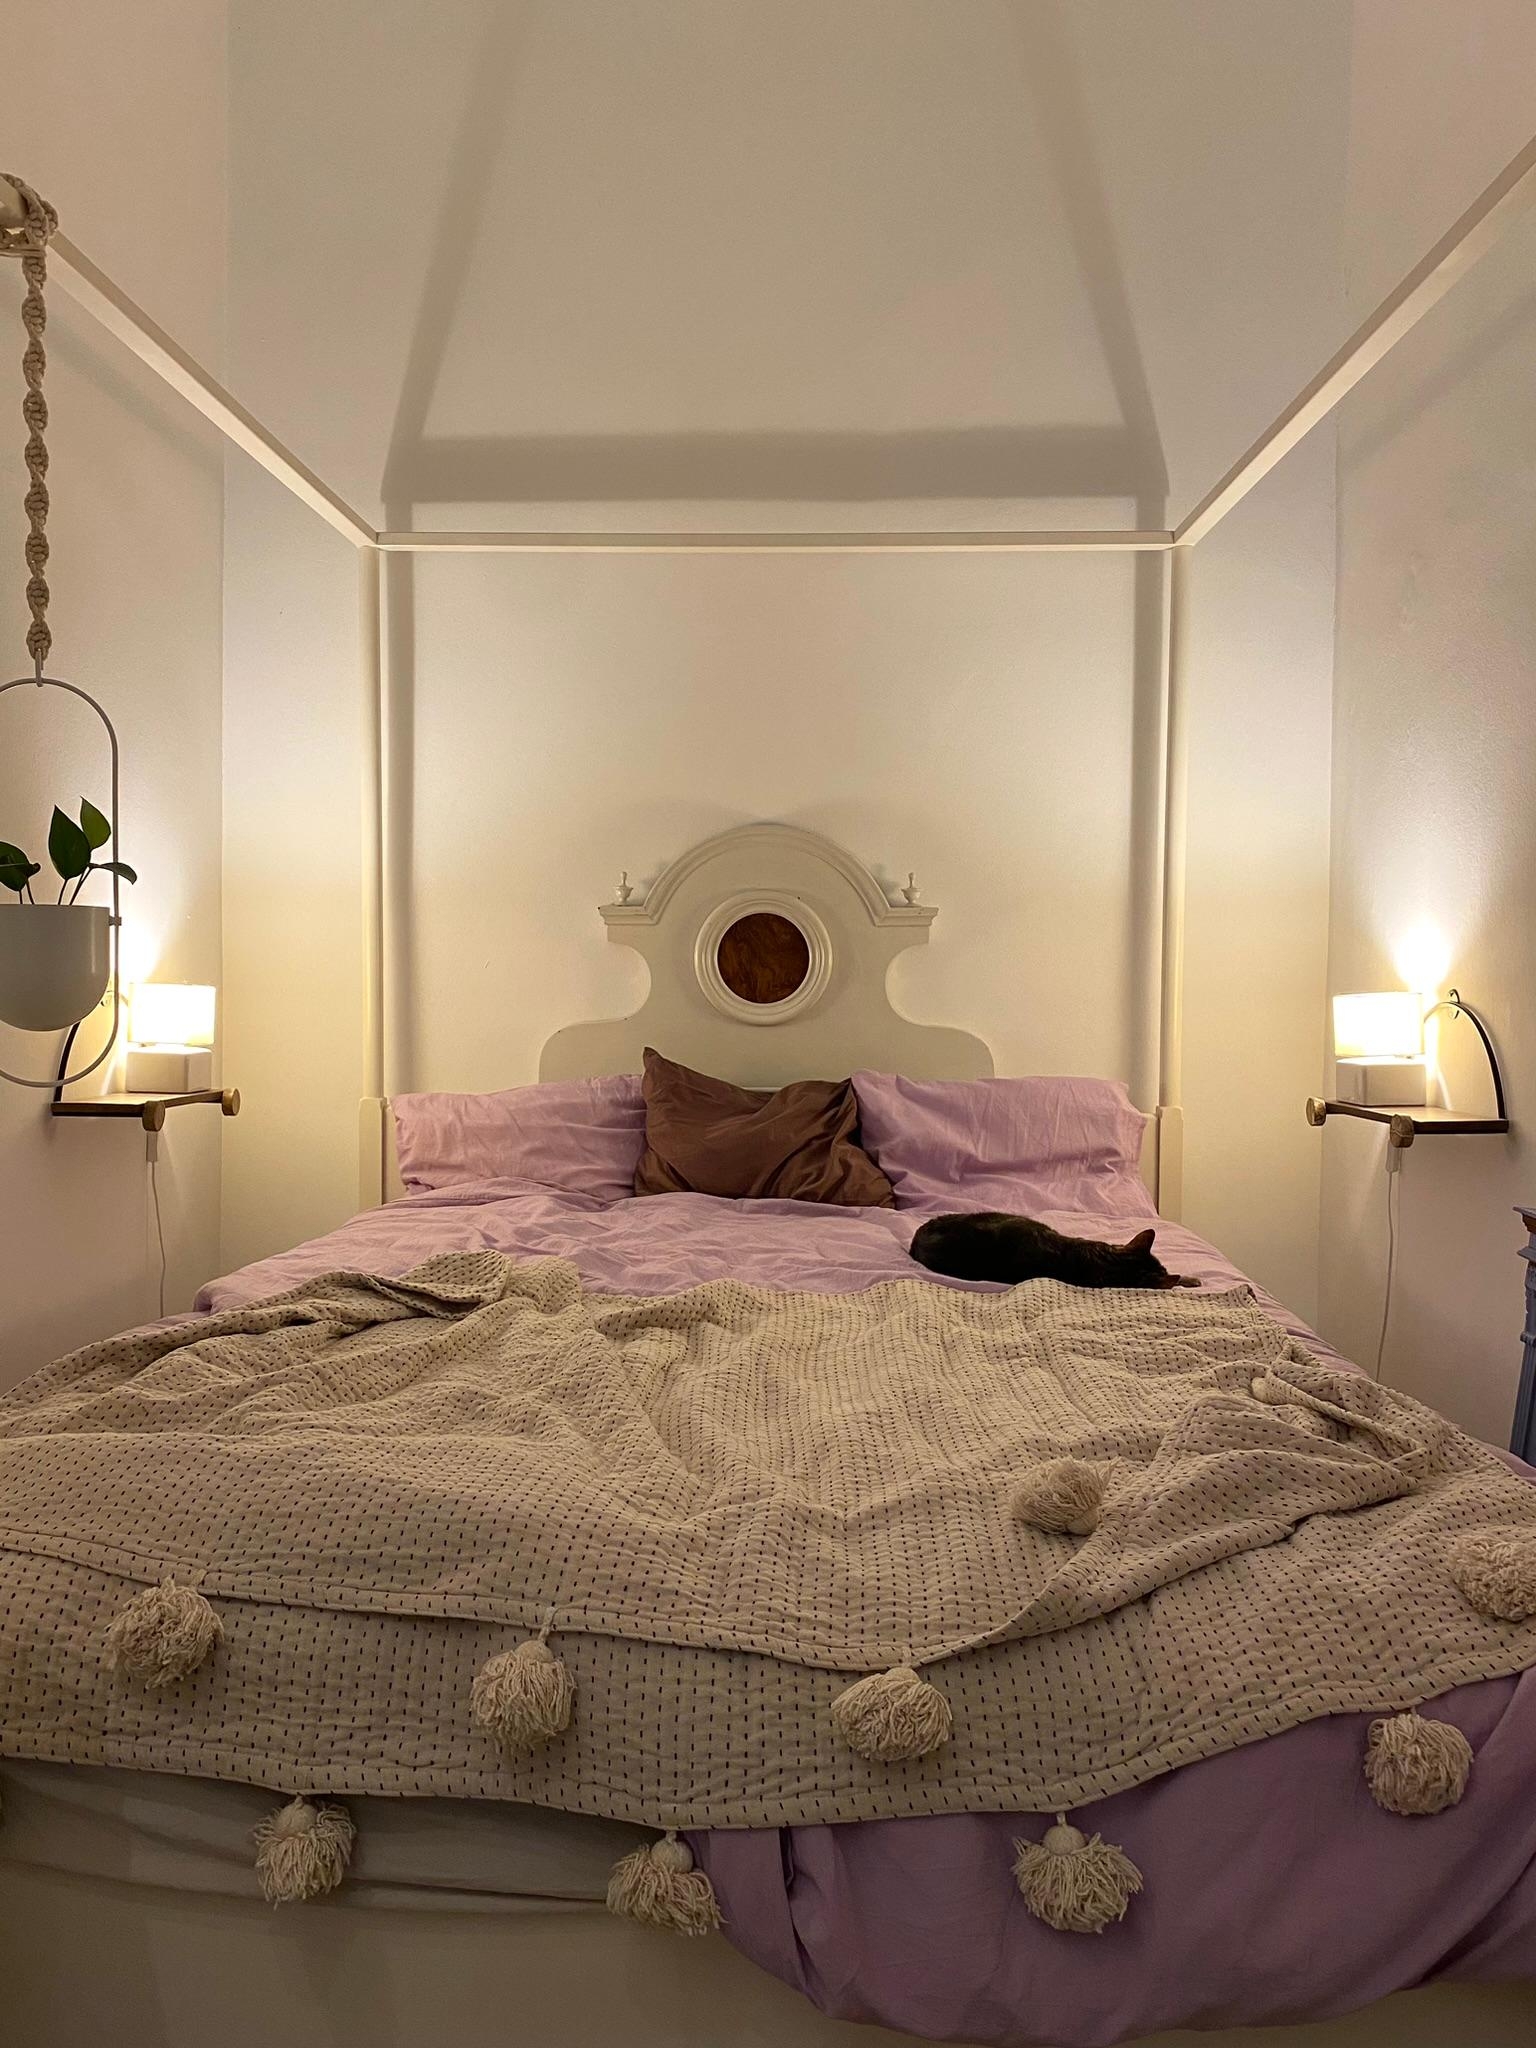 schwer zu zeigende Räume, Teil 1: unser wirklich kleines Schlafzimmer!
#Schlafzimmer #Himmelbett #vintage #Bett #cozy